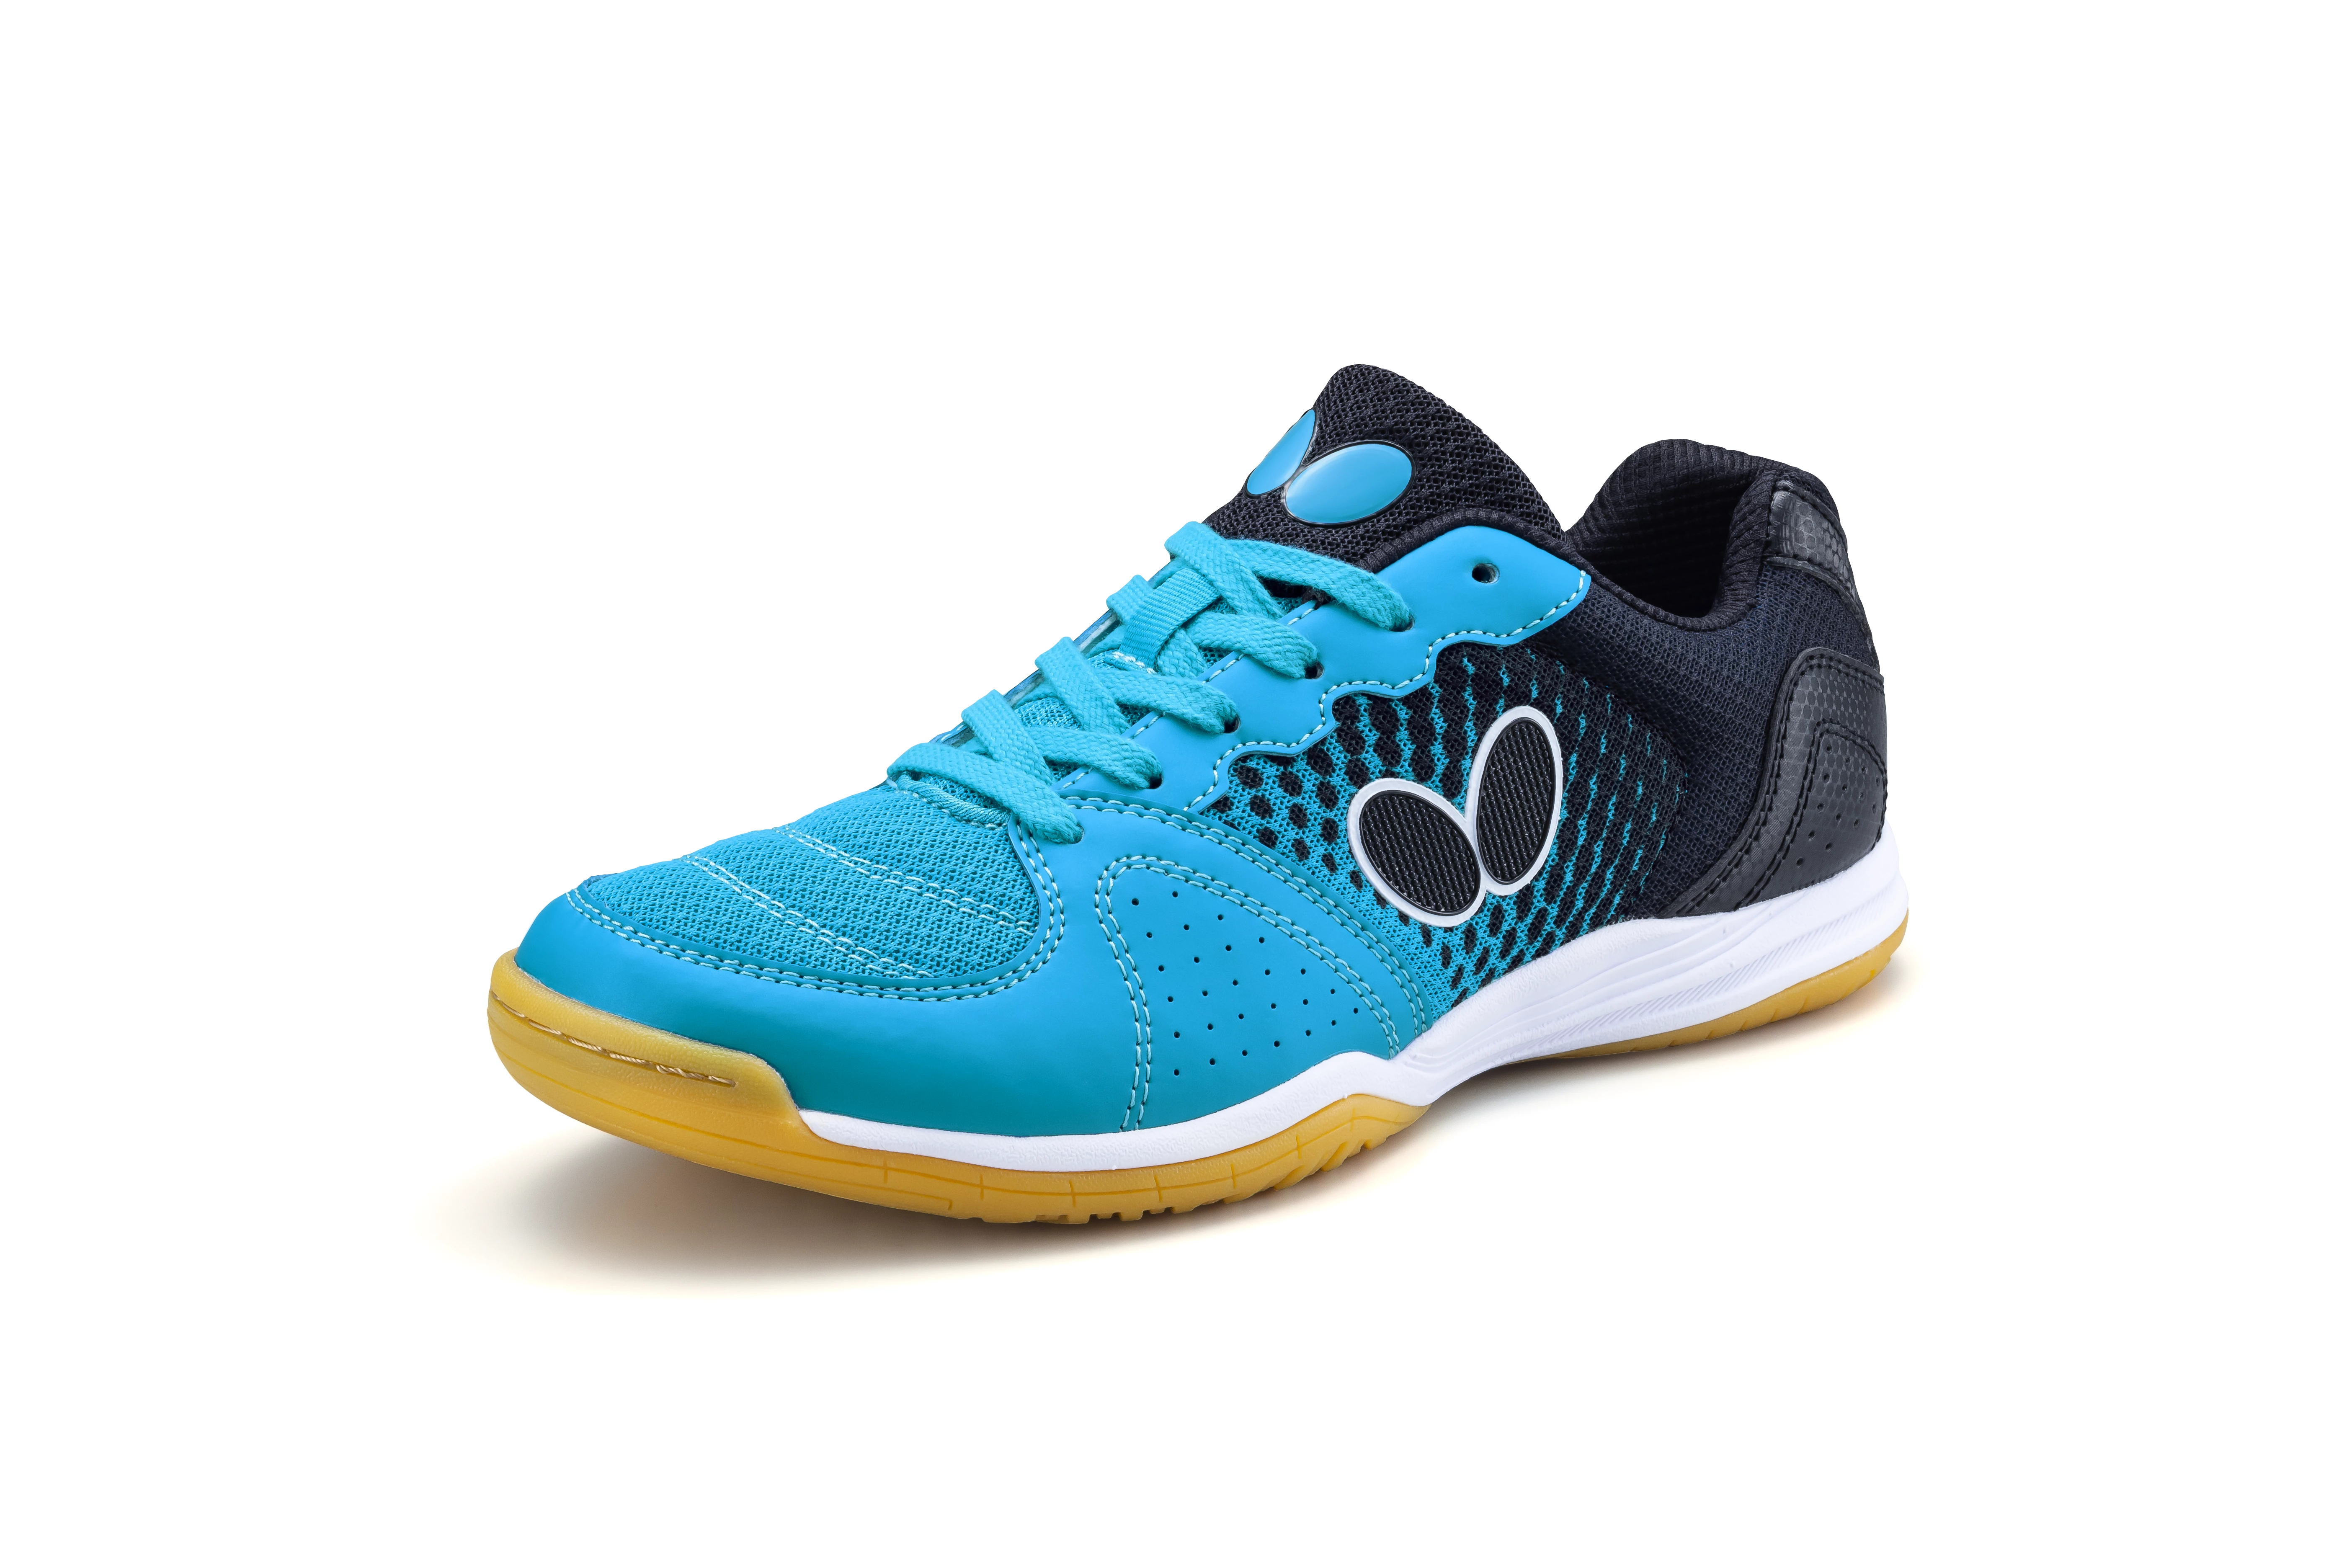 Men's Indoor Shoes Butterfly Lezoline Vilight Blue EUR 42